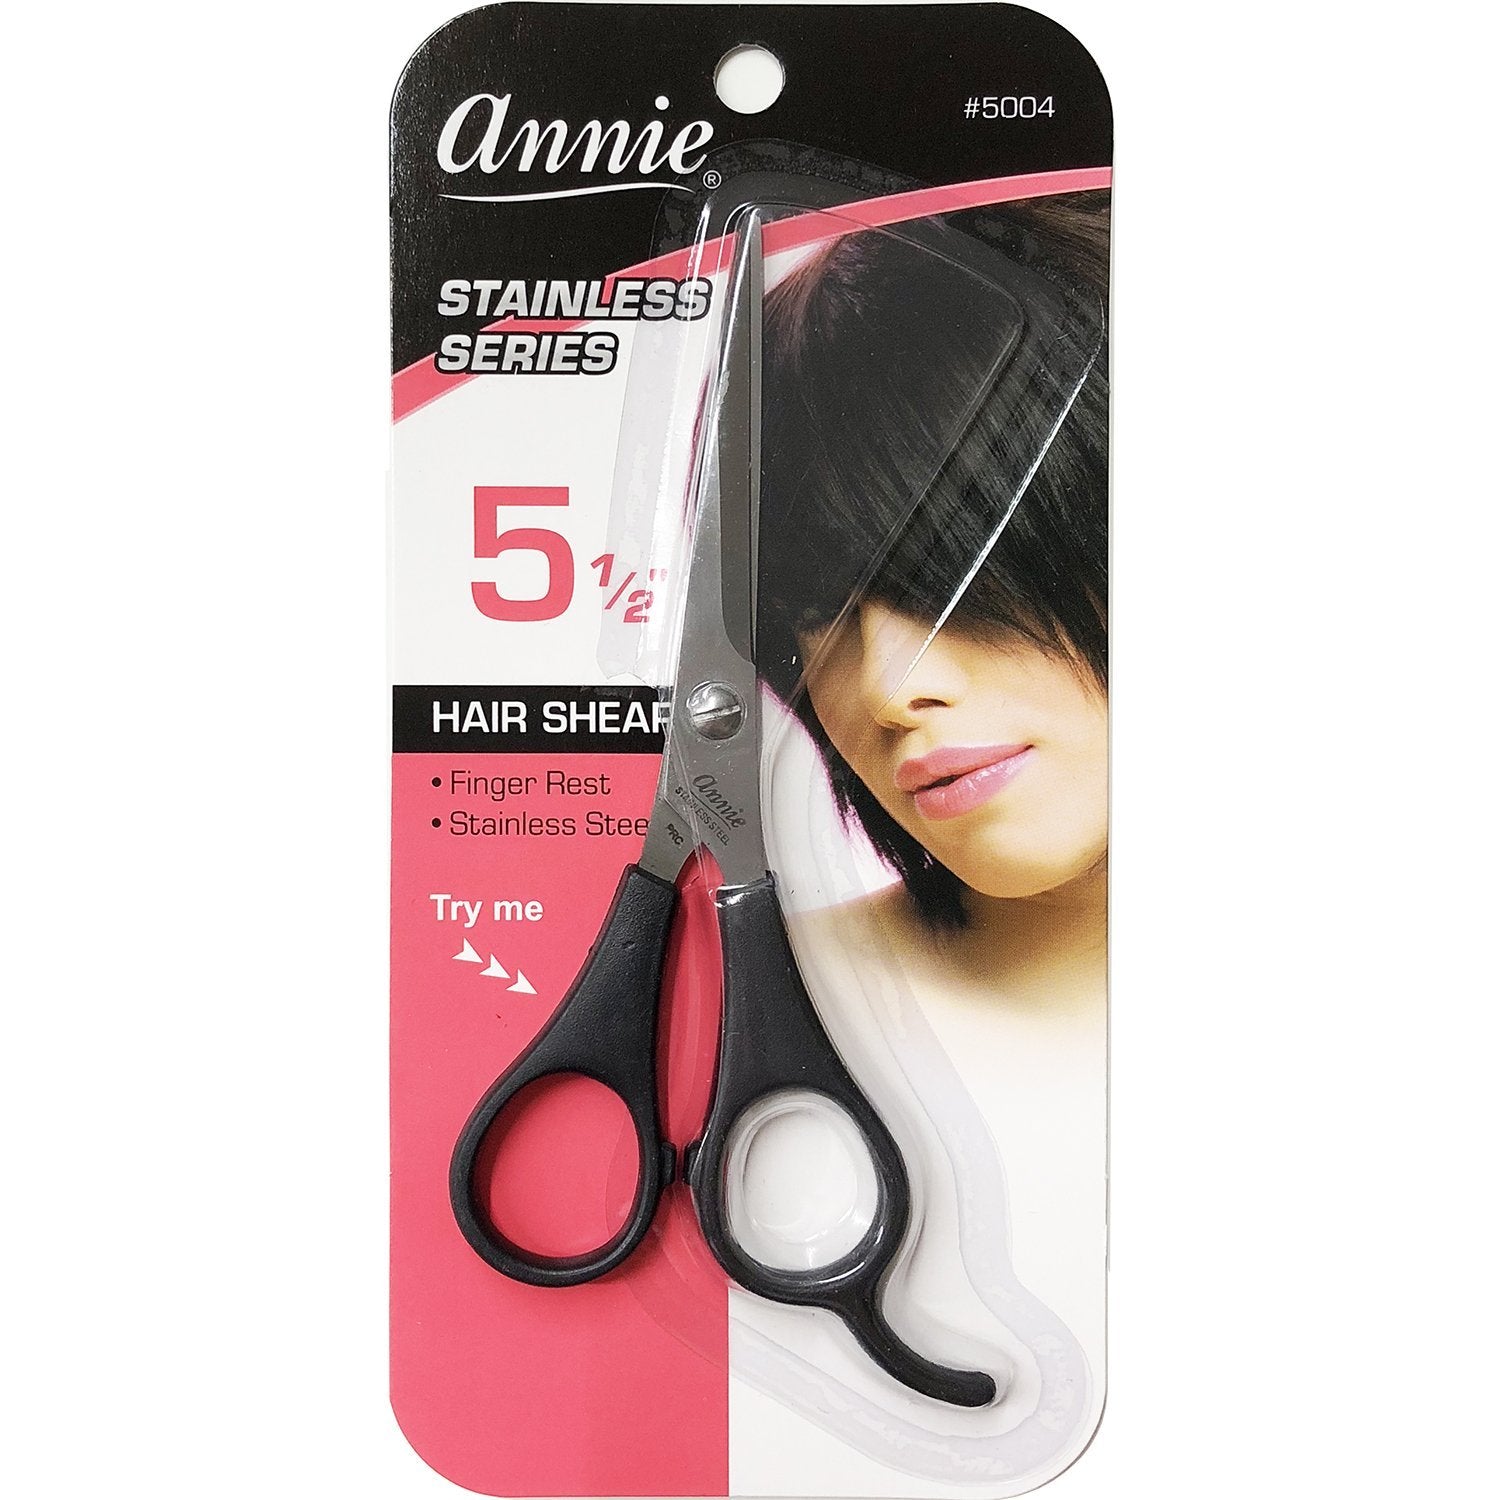 ANNIE 5-1/2" HAIR SHEAR STAINLESS SERIES #5004